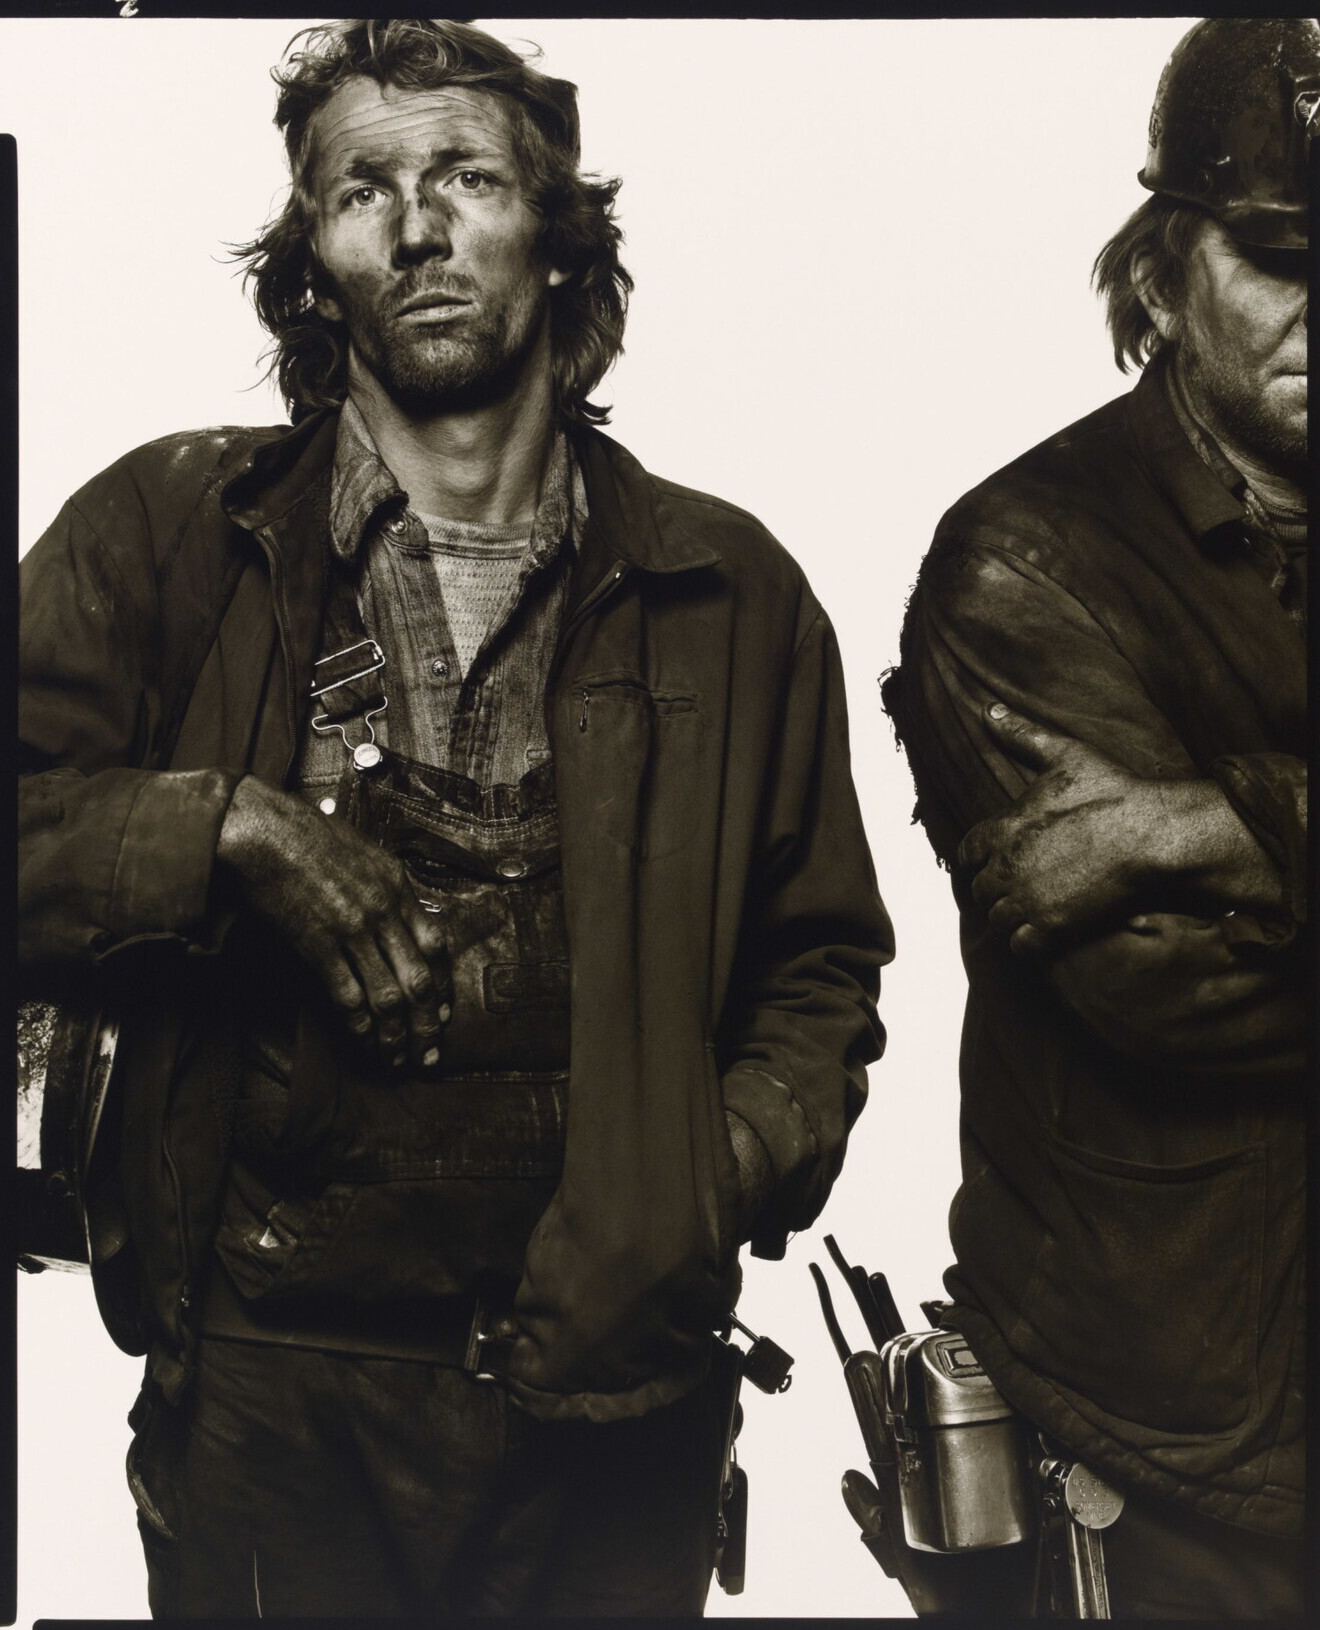 Гэри Полсон, Элвин Роули, шахтеры, Сомерсет, Колорадо, 1979 г. Фотограф Ричард Аведон